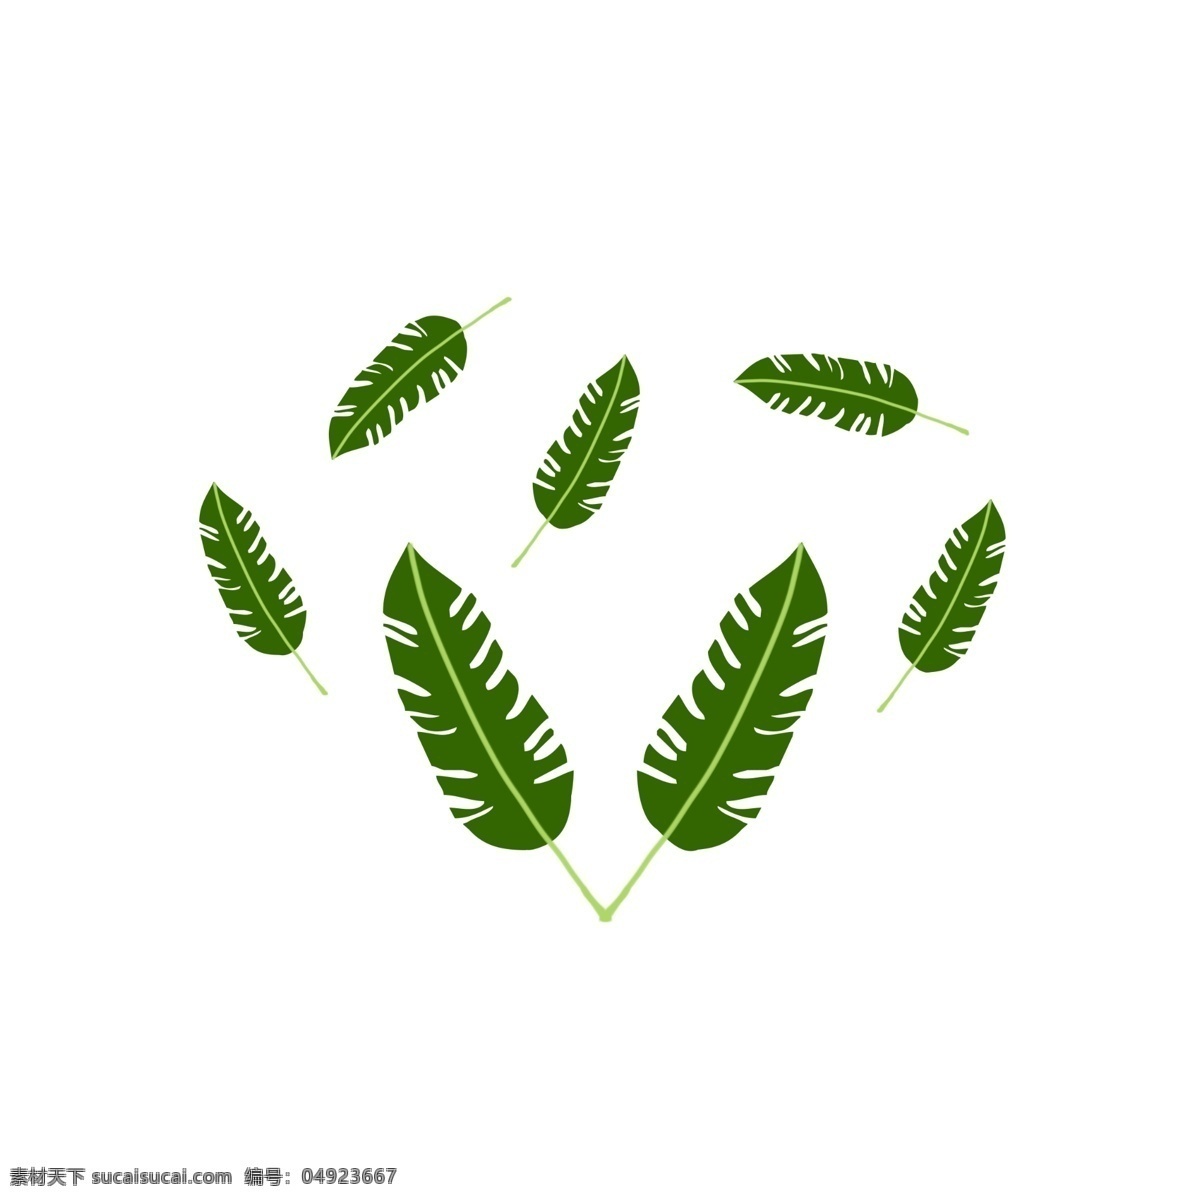 多个 芭蕉叶 插画 绿色植物 多片树叶 绿色的芭蕉叶 创意大叶子 树枝树叶插画 飘落的树叶